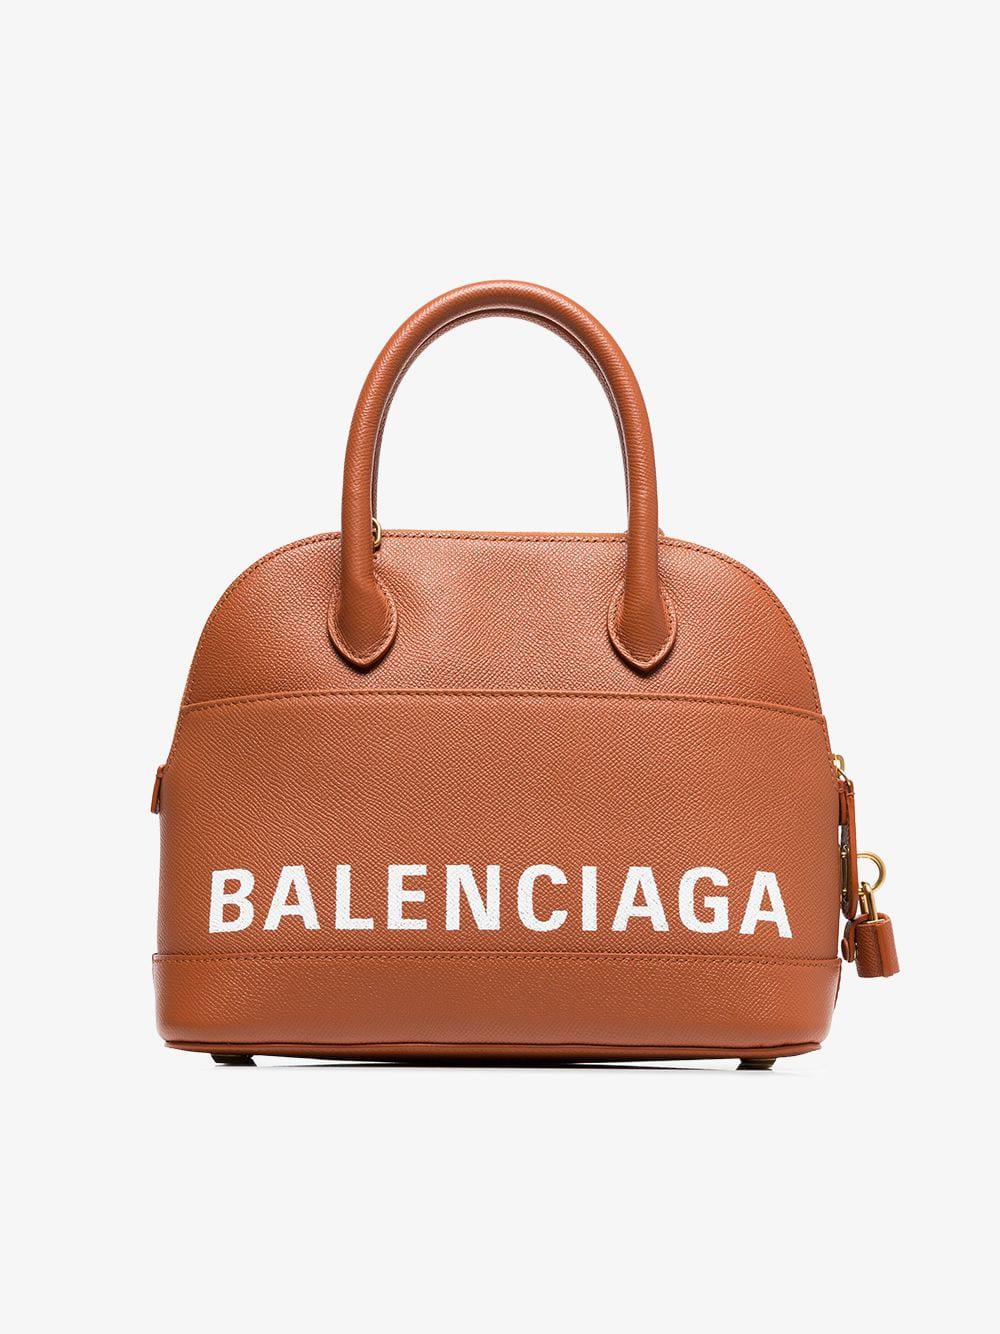 Brown City Bag  Balenciaga  MyPrivateDressing